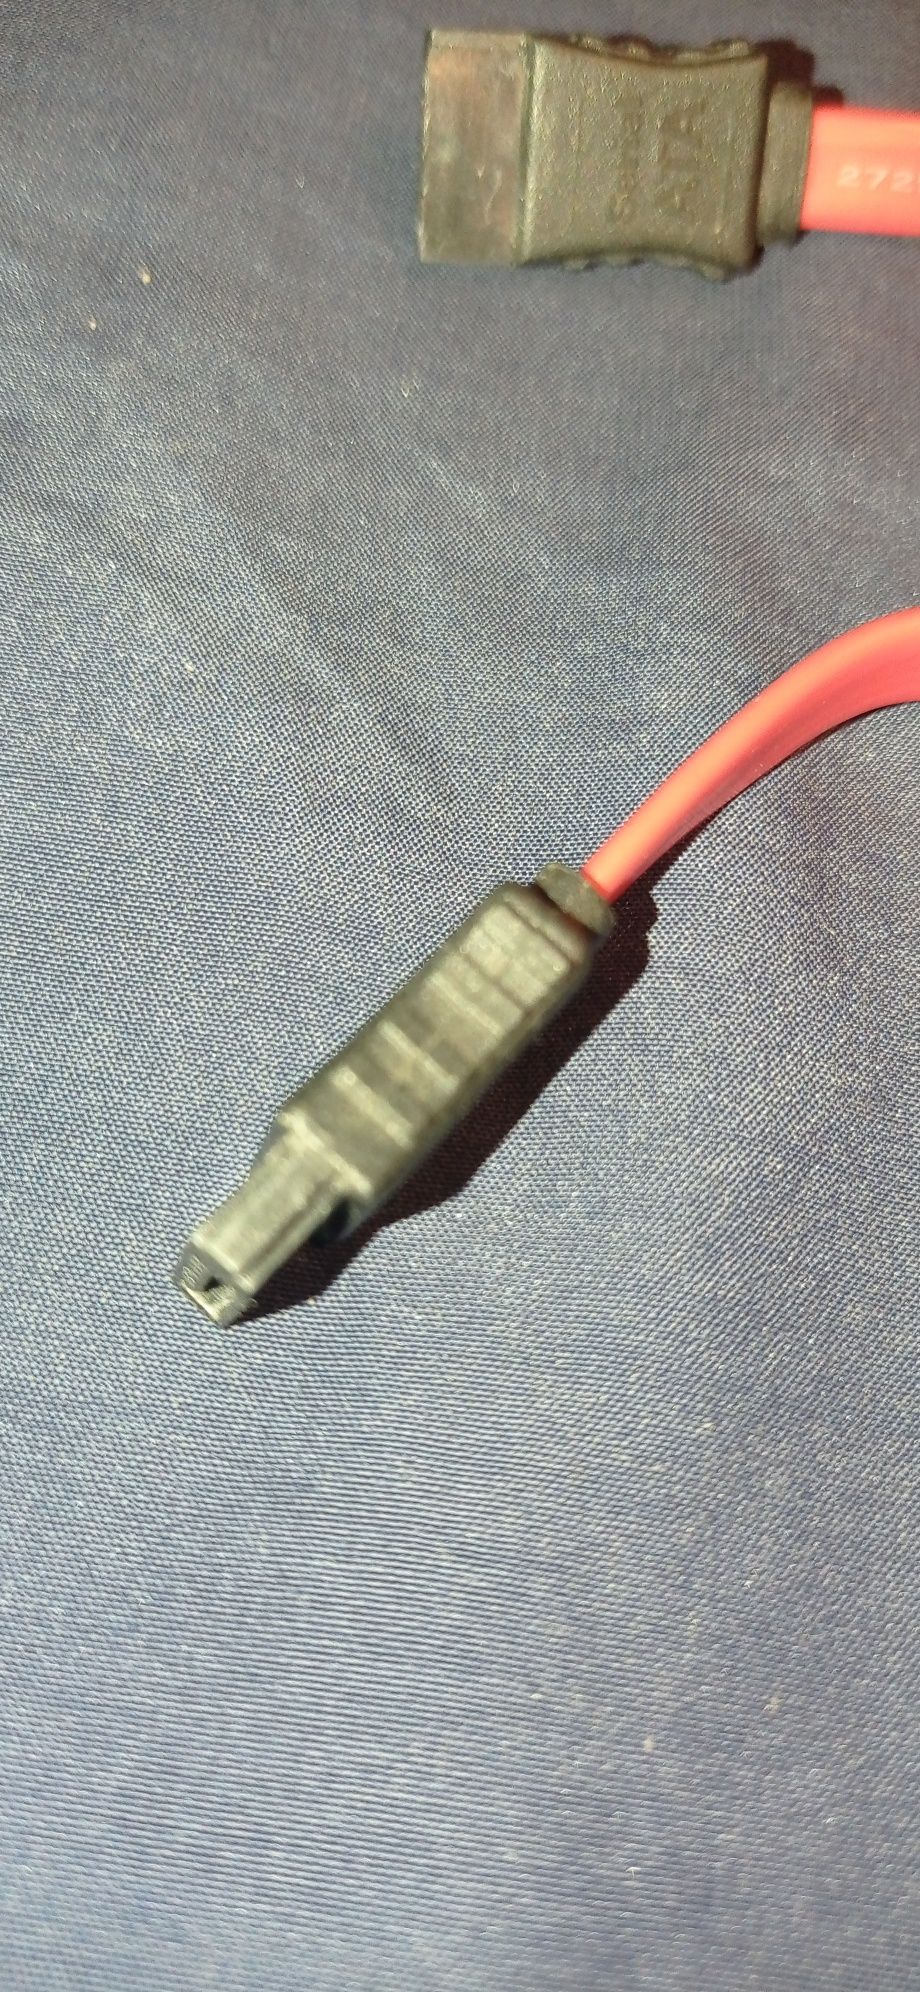 FOXCONN C95764-001 Красный кабель SATA II, 20 дюймов, с металлической